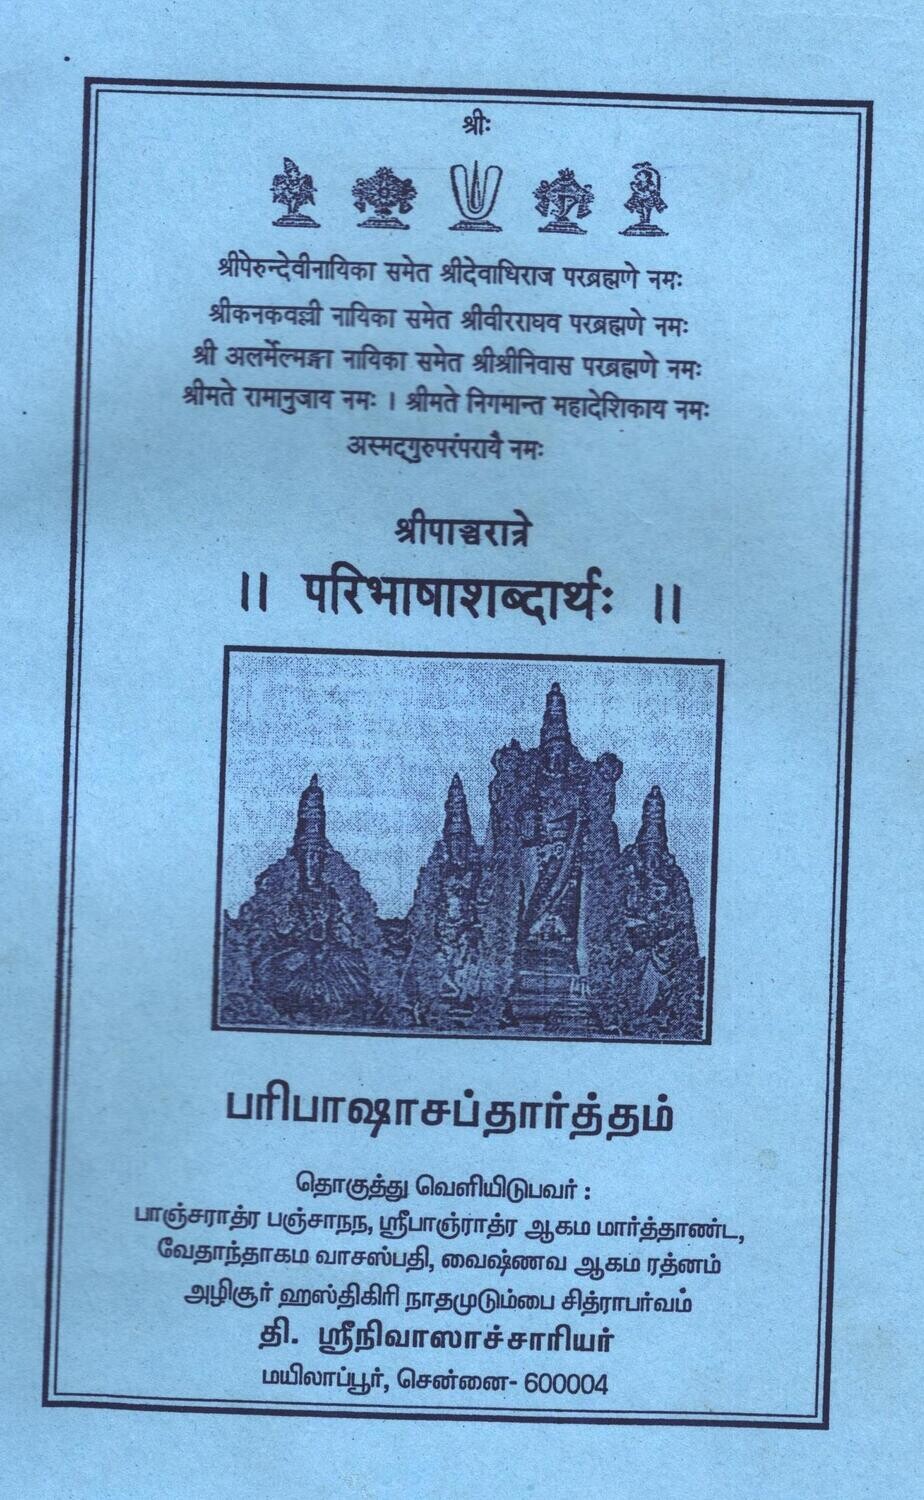 Sri Shri pancarathra -pancharatra  paribhasha shabdartha - Azhisur Srinivasacharyar